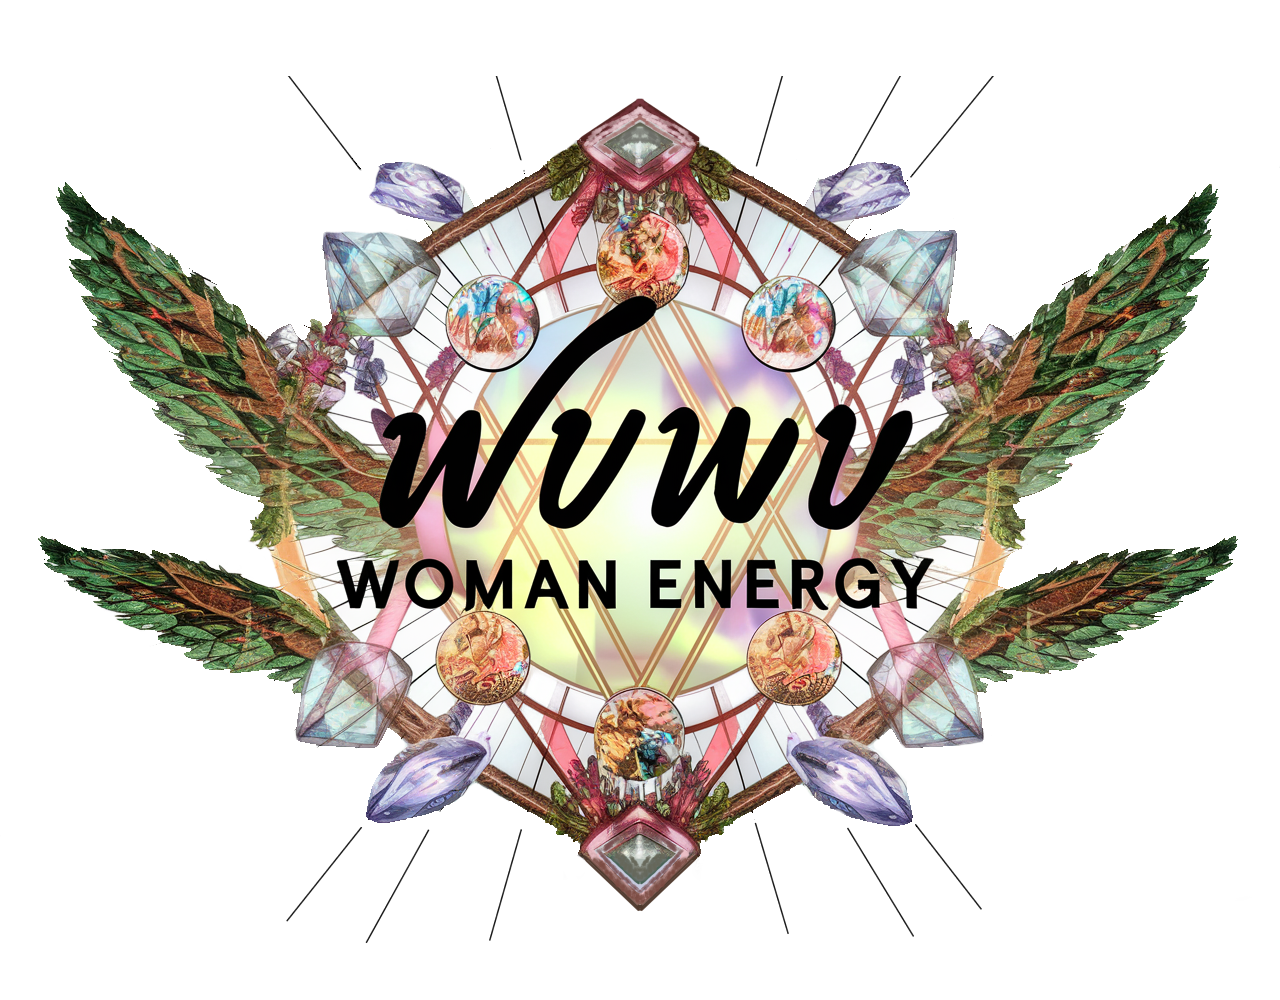 Wuwu Woman